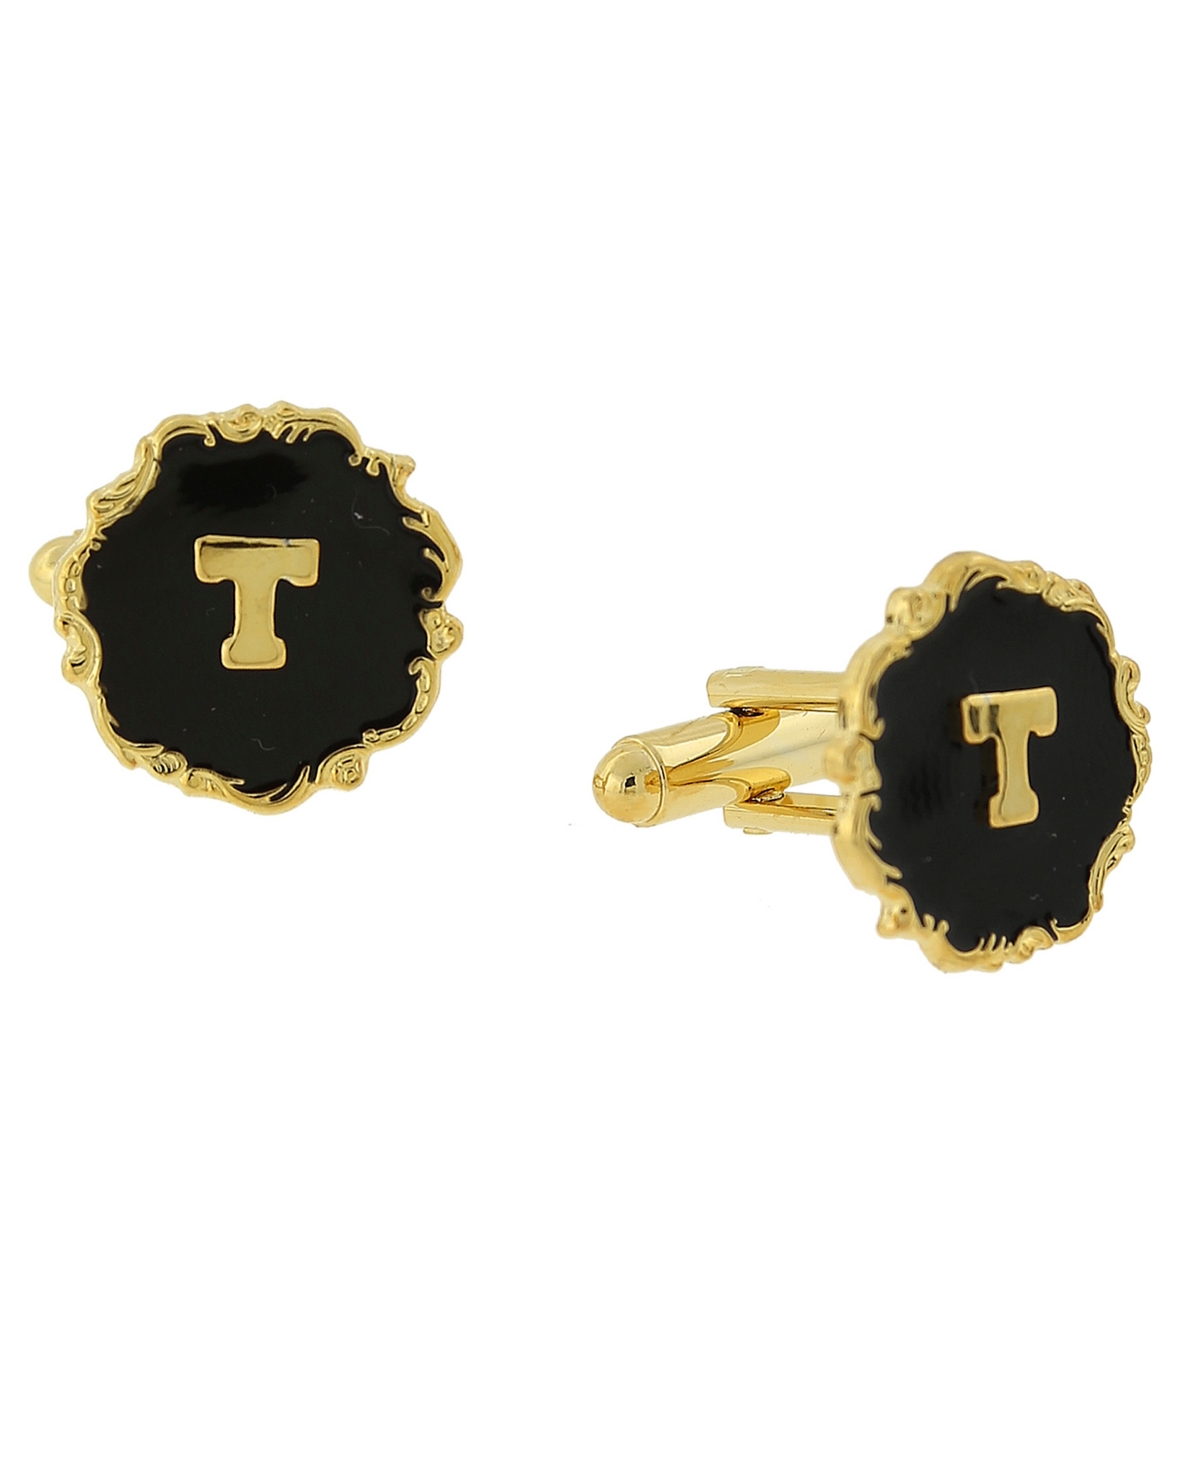 1928 Jewelry 14k Gold-plated Enamel Initial T Cufflinks In Black